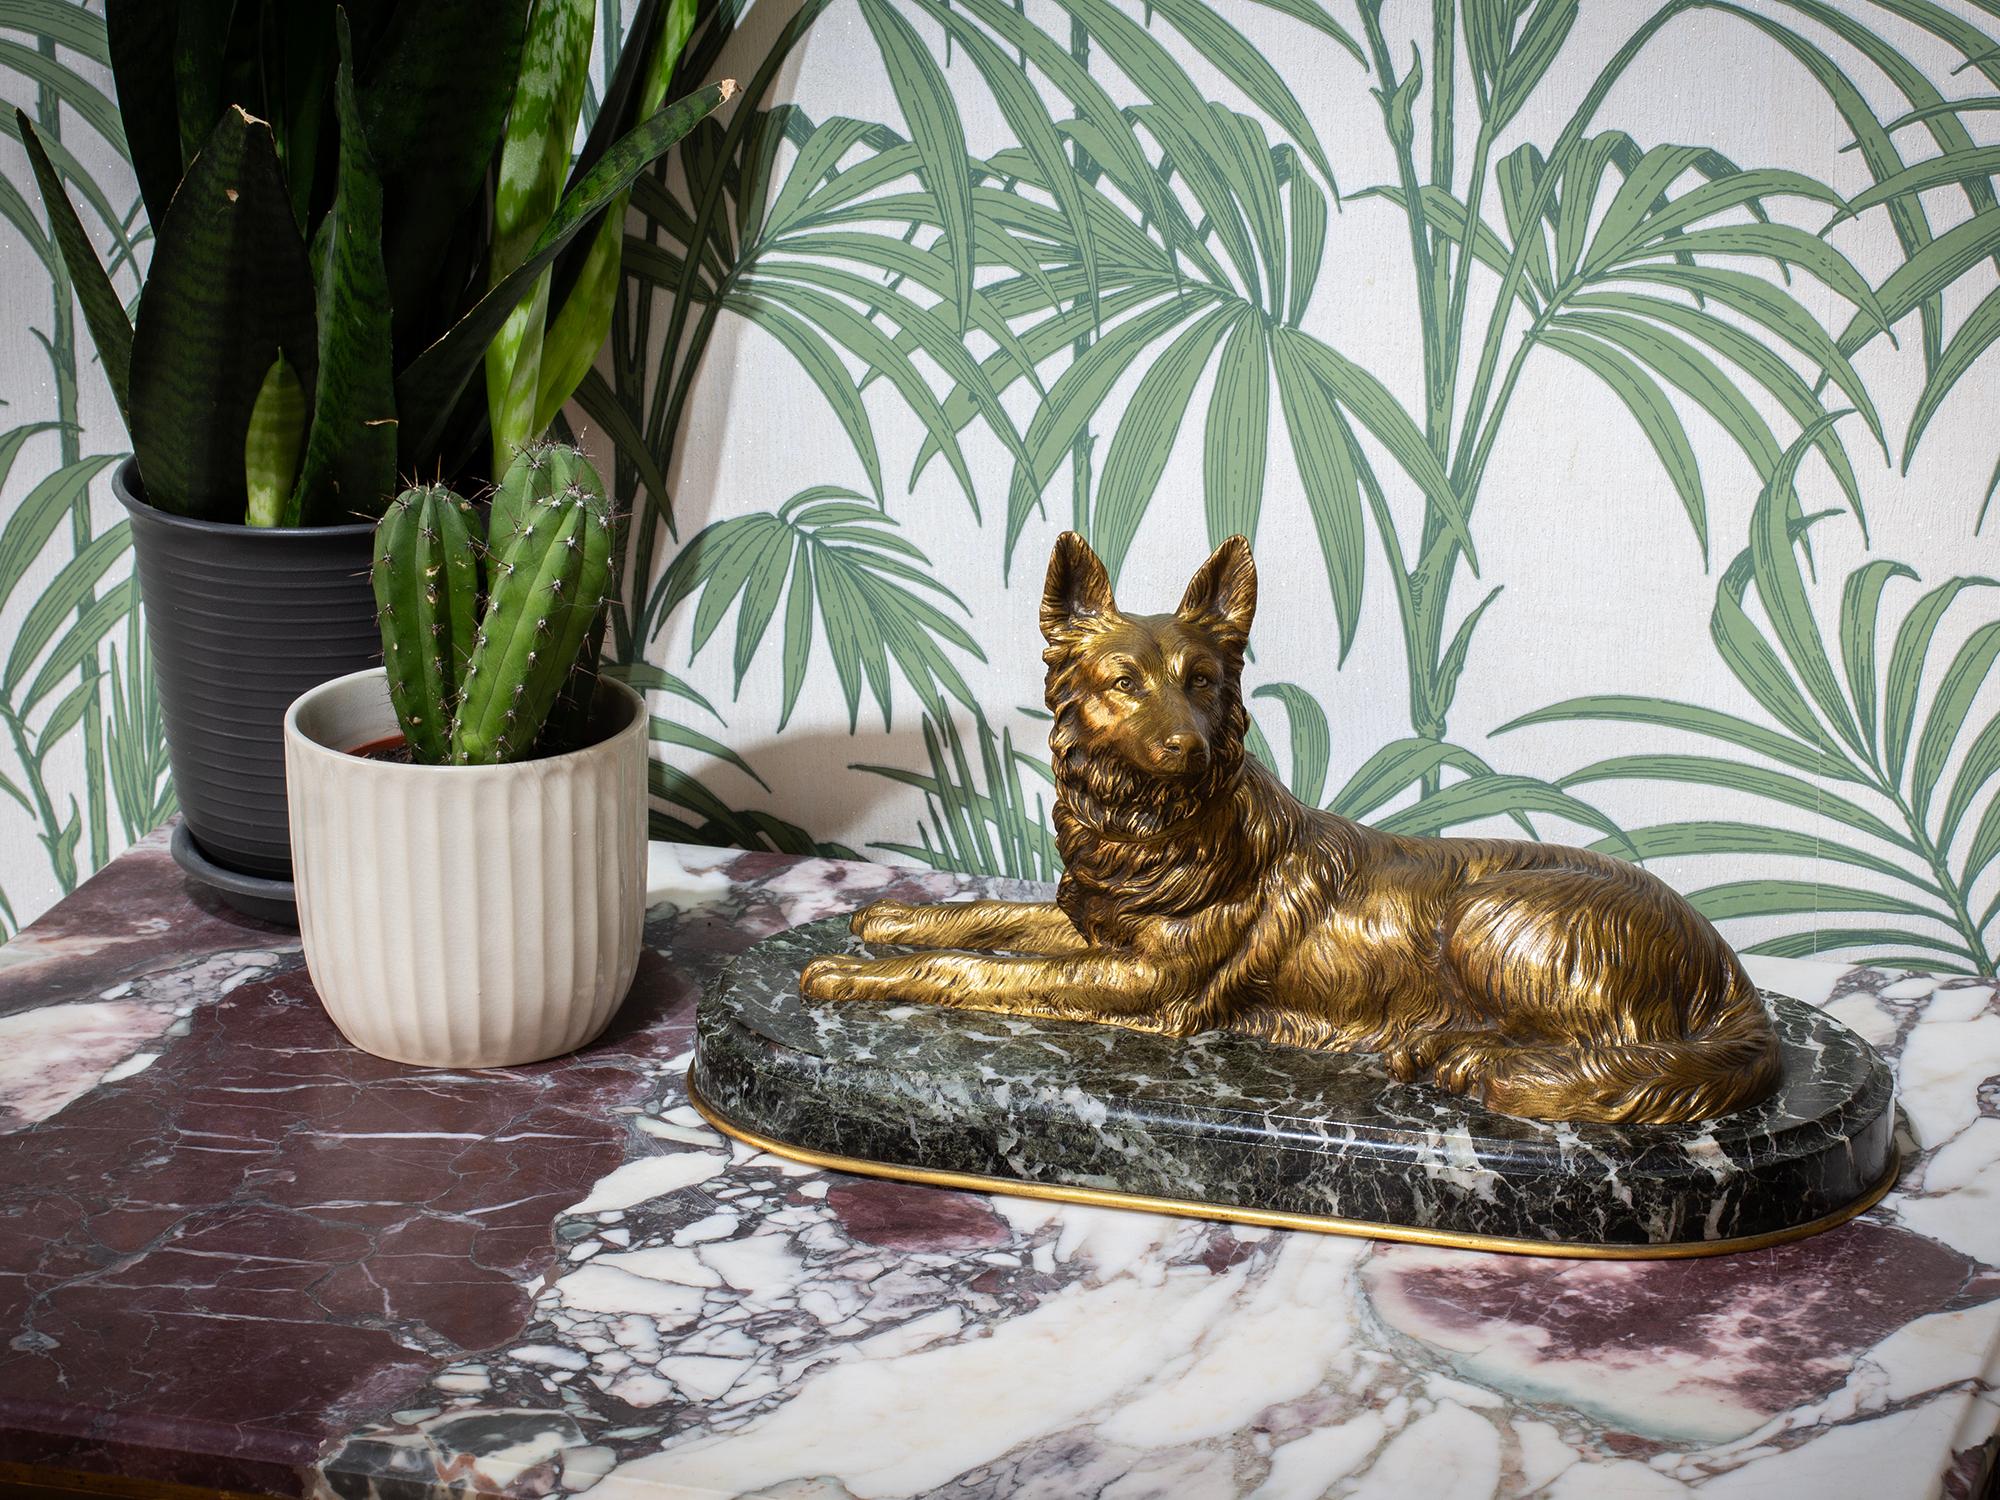 Französische Bronze CIRCA 1905 auf einem ovalen Marmorsockel

Aus unserer Skulpturenkollektion bieten wir Ihnen eine französische Bronzefigur eines belgischen Schäferhundes an. Die Figur steht auf einem Sockel aus grünem Marmor mit konvexem Rand und